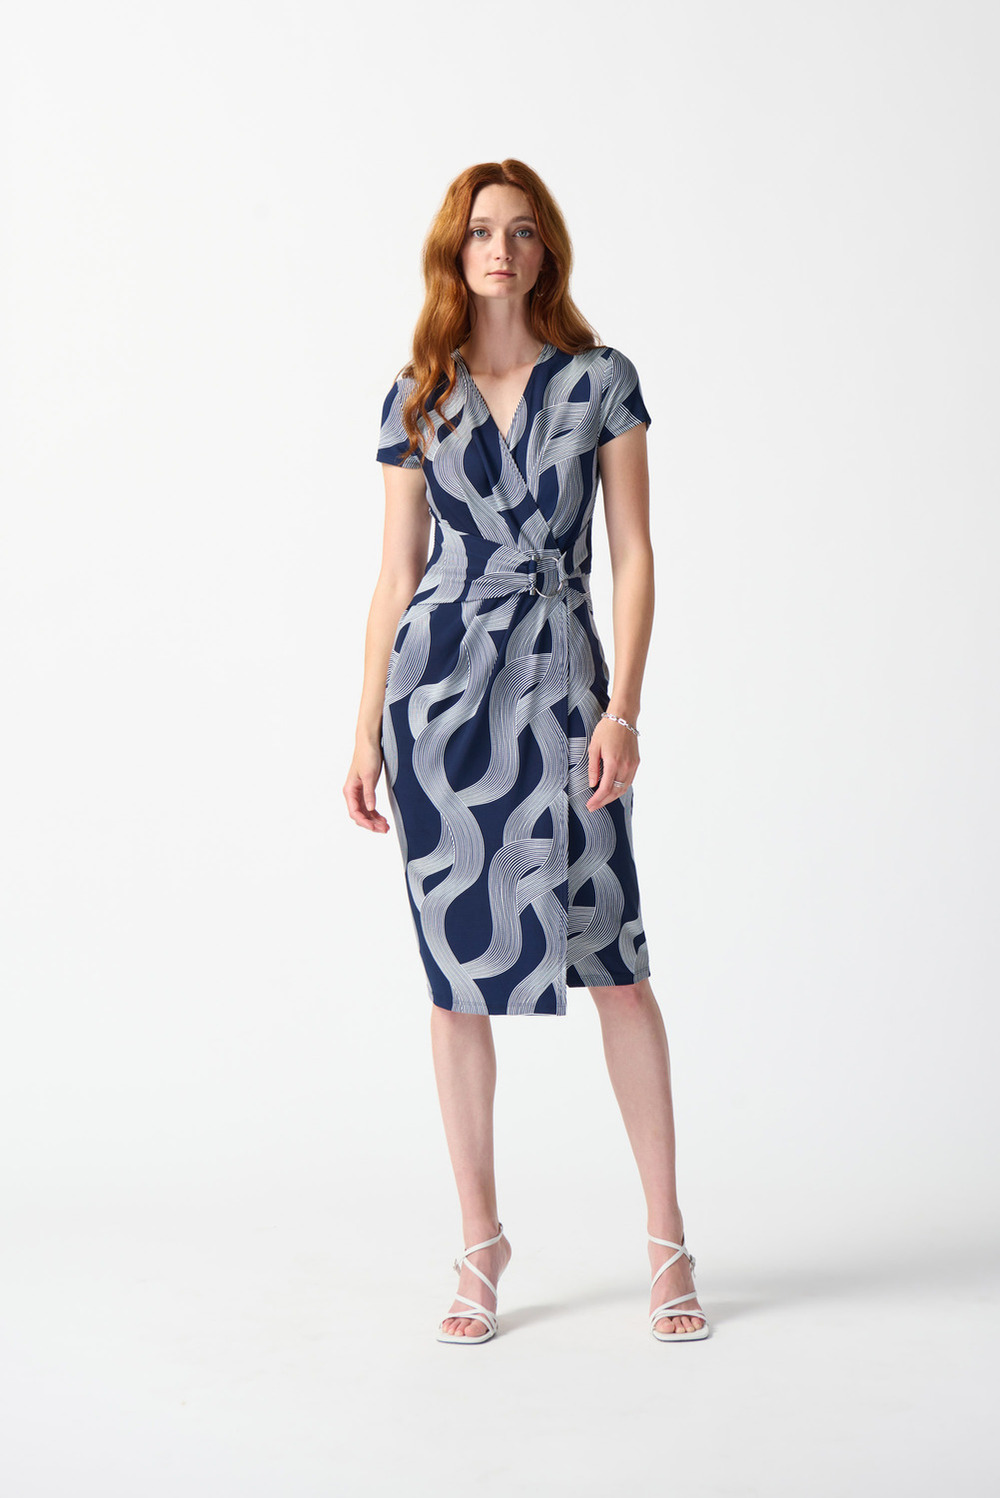 Abstract Print Jersey Dress Style 242023. Midnight Blue/vanilla